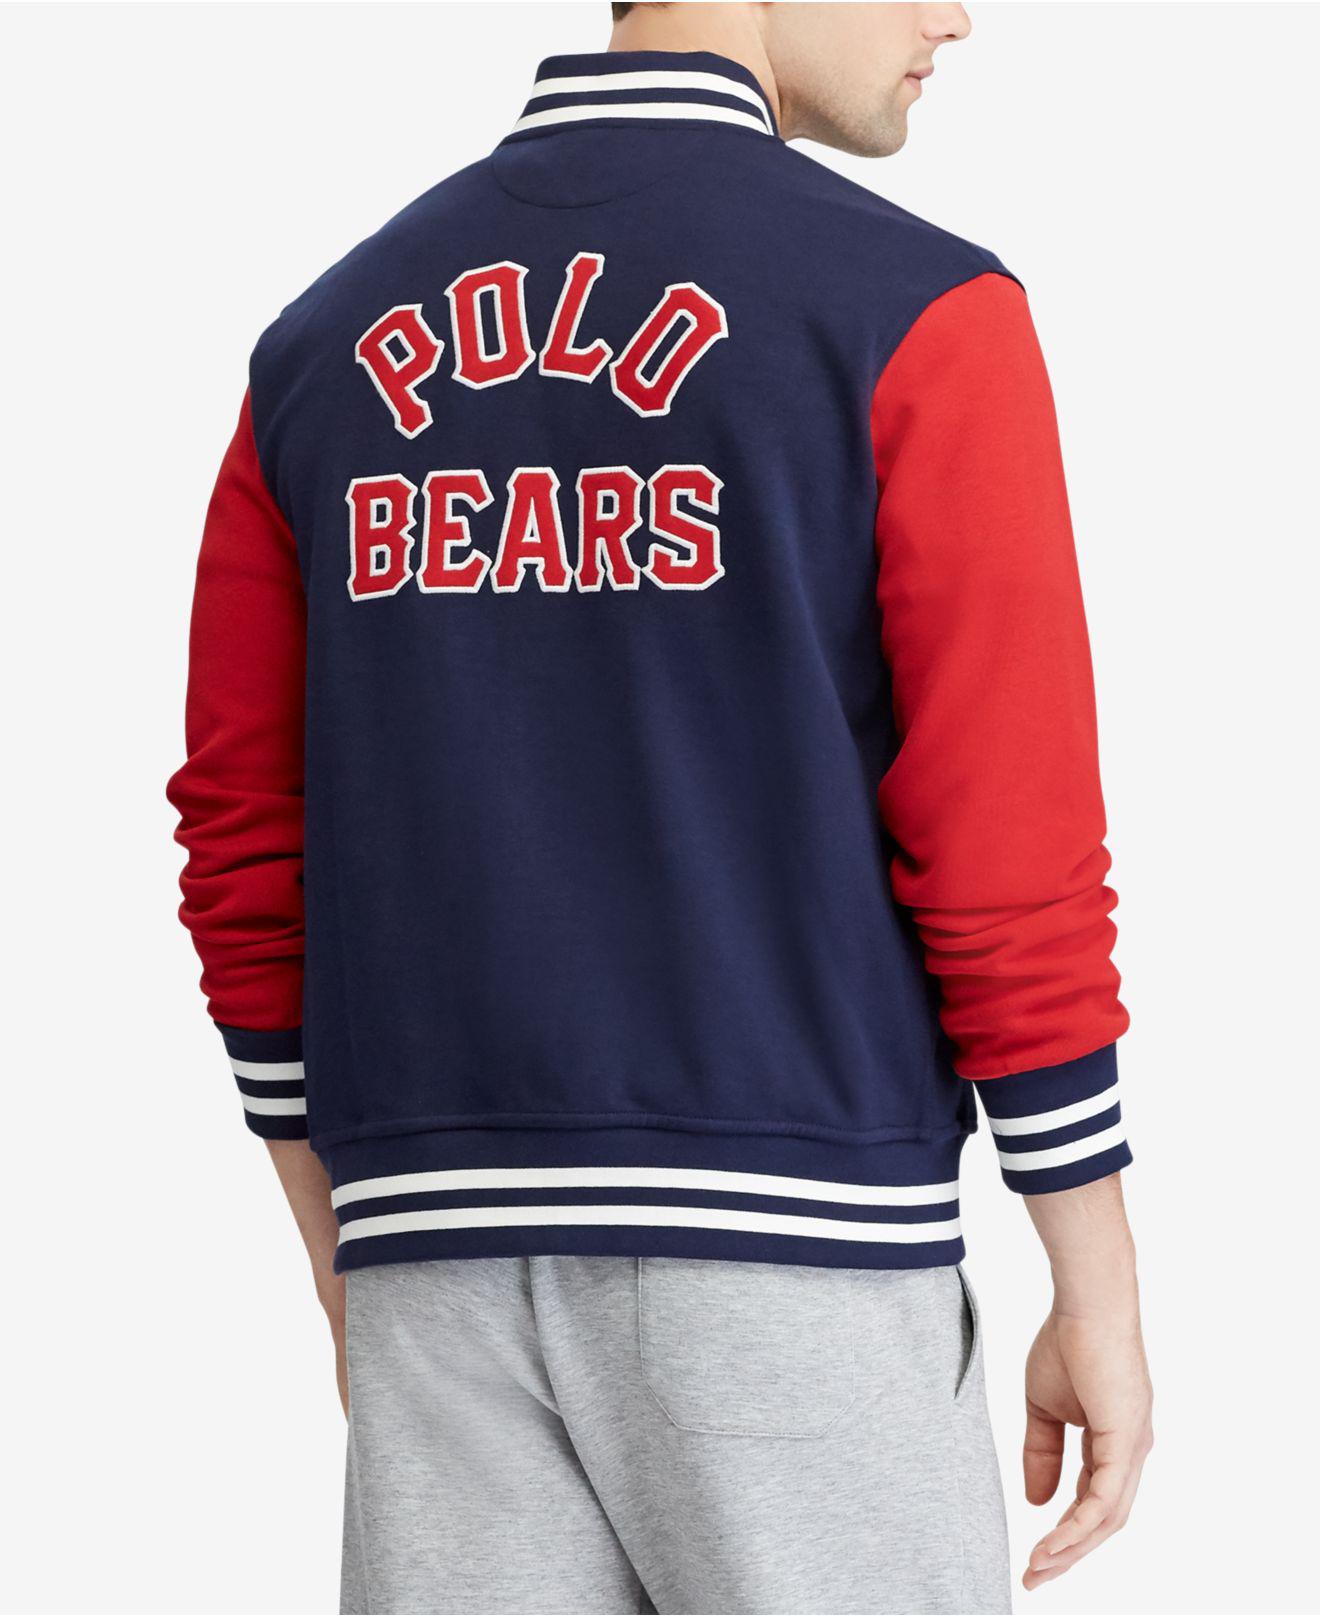 polo bear baseball jacket